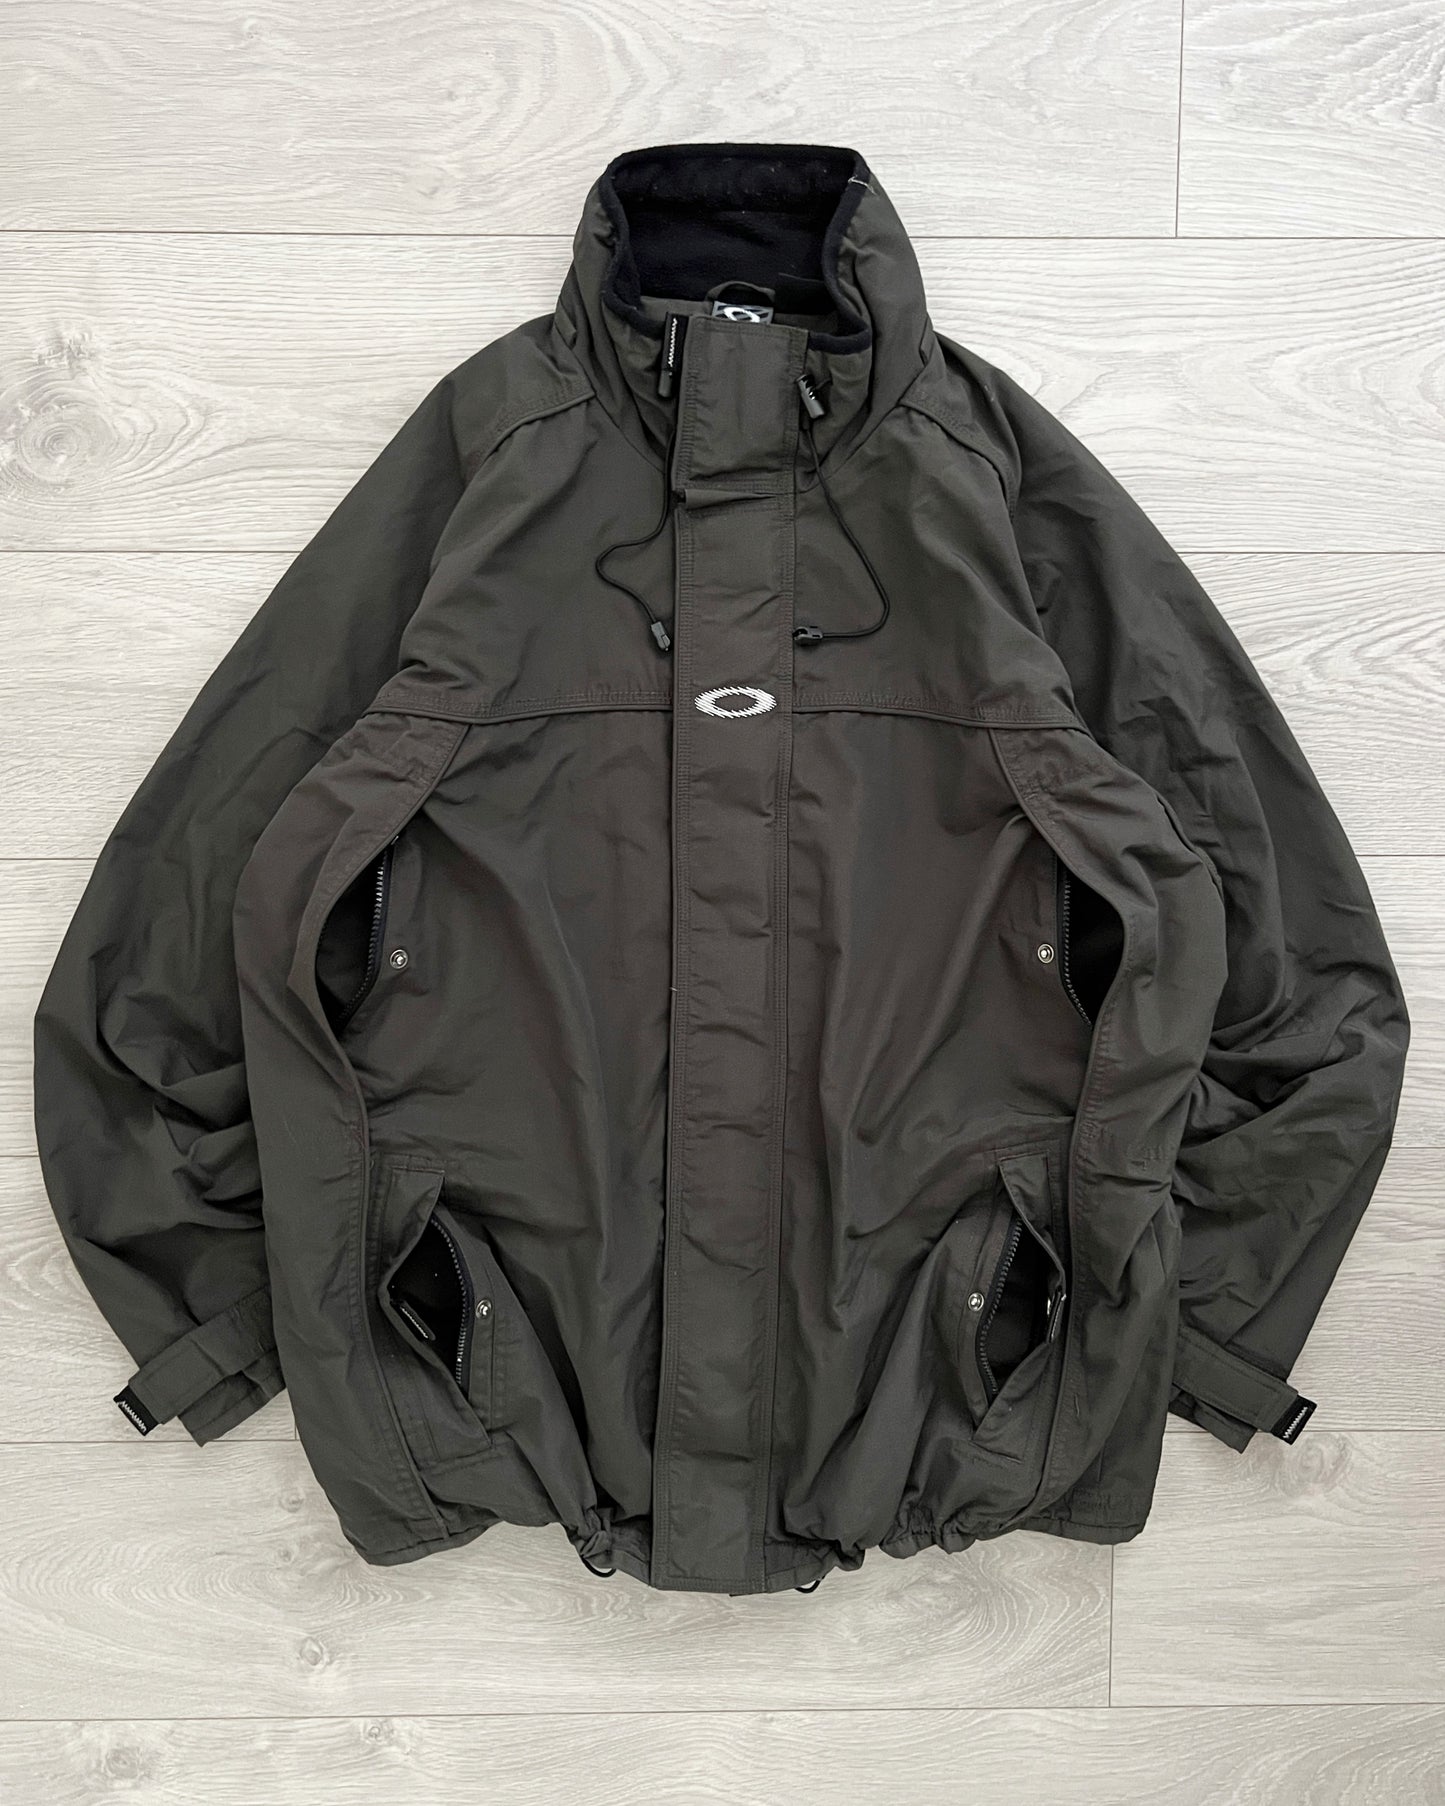 Oakley Software 00s Technical Waterproof Jacket - Size XL